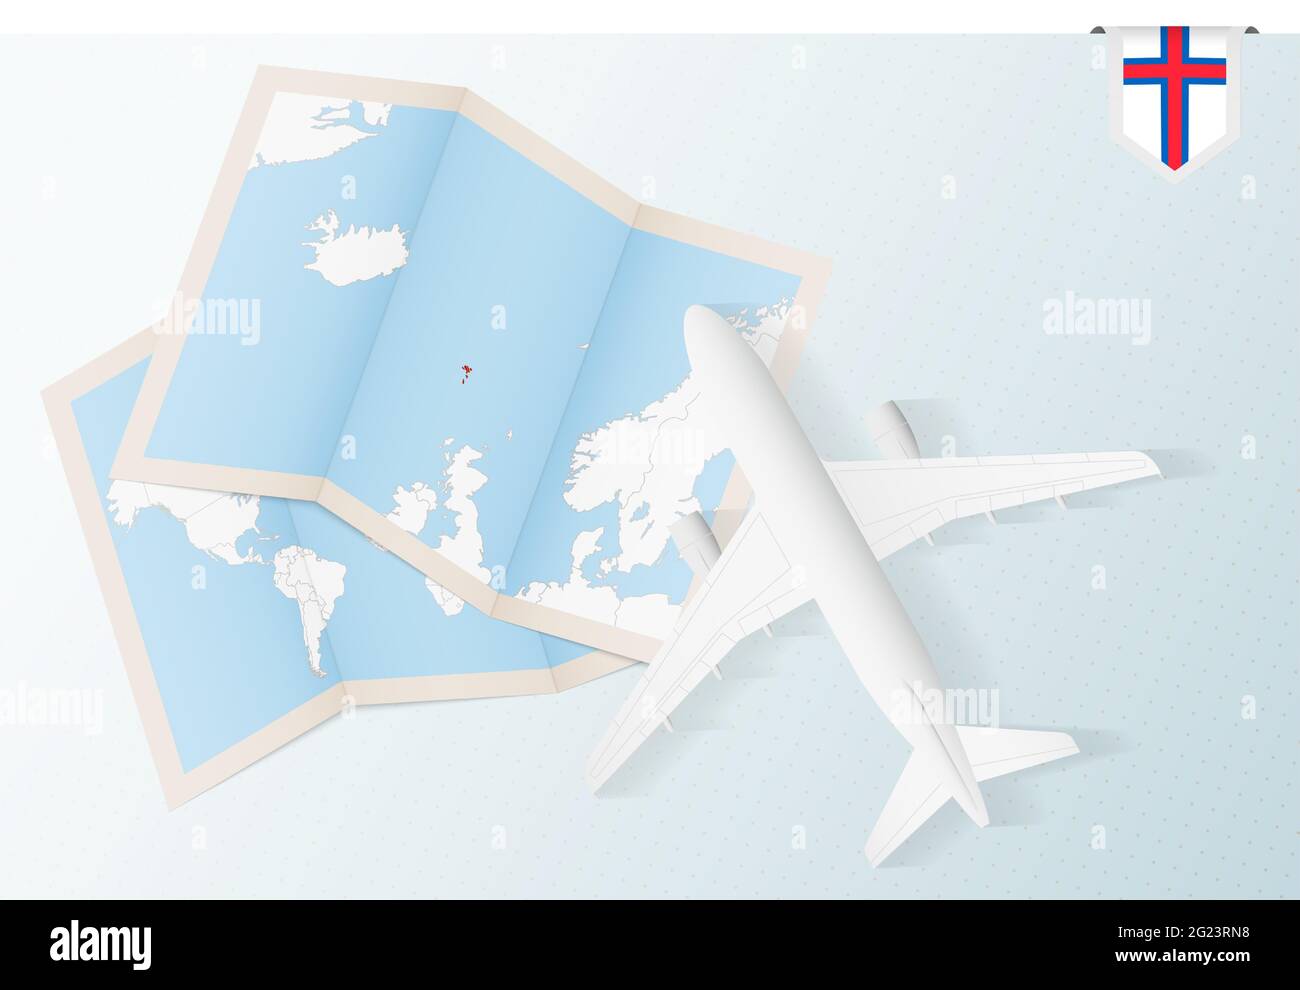 Reise nach Färöer, Flugzeug von oben mit Karte und Flagge der Färöer-Inseln. Reise- und Tourismus-Banner-Design. Stock Vektor